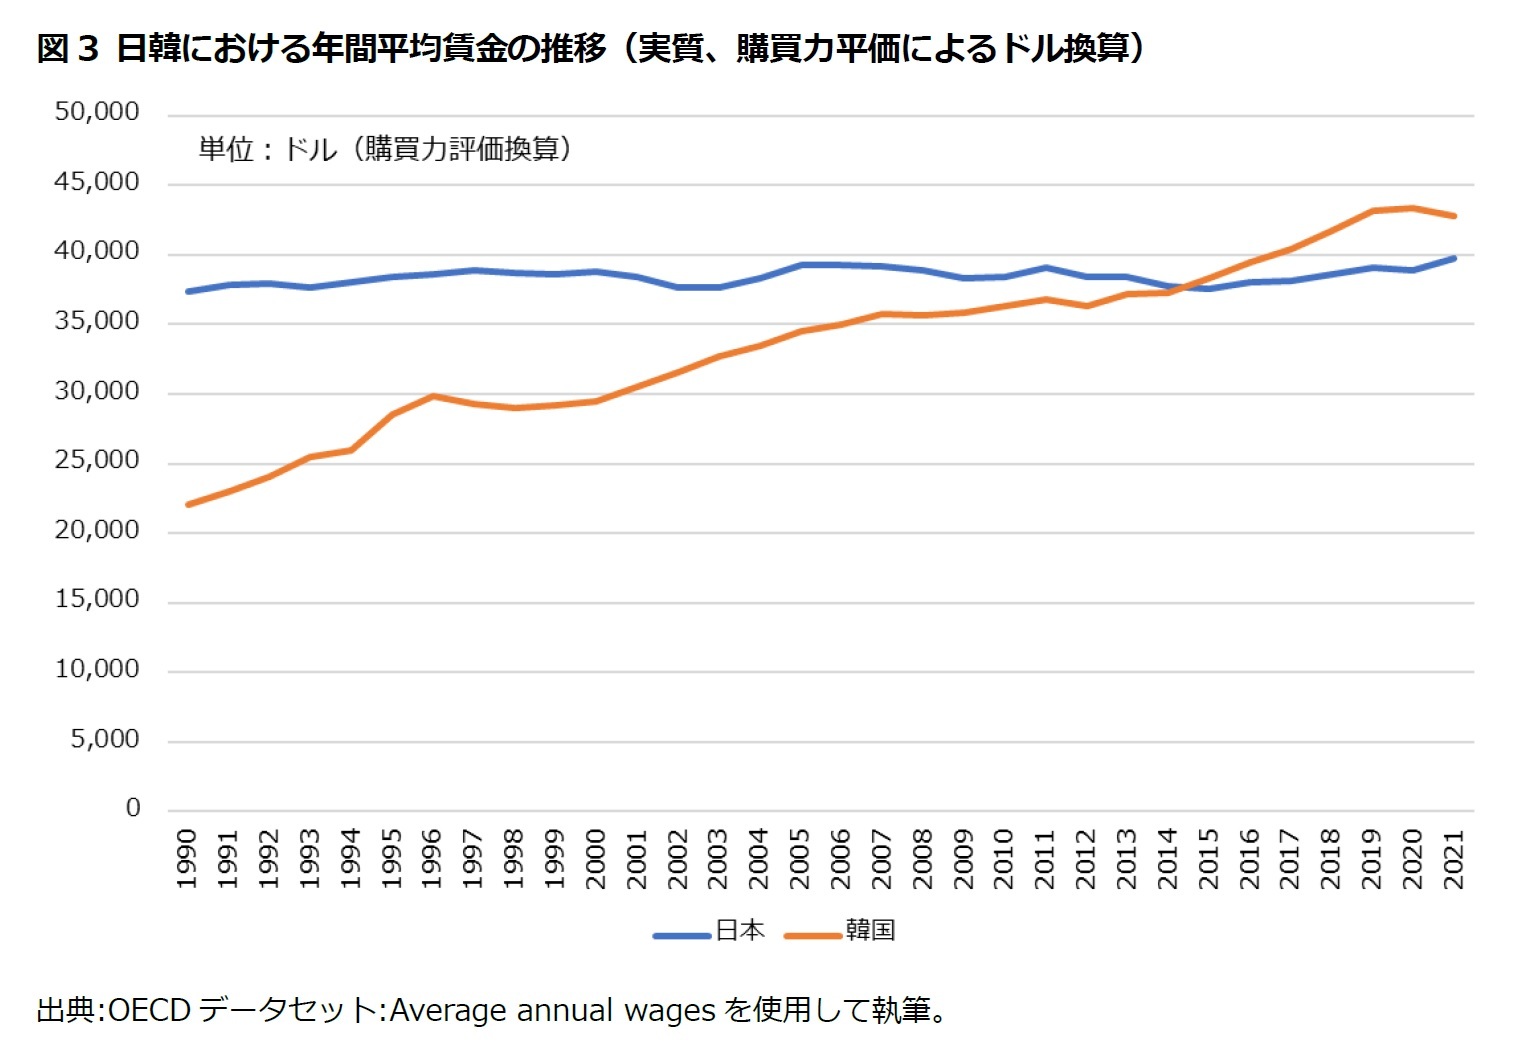 図3 日韓における年間平均賃金の推移（実質、購買力平価によるドル換算）